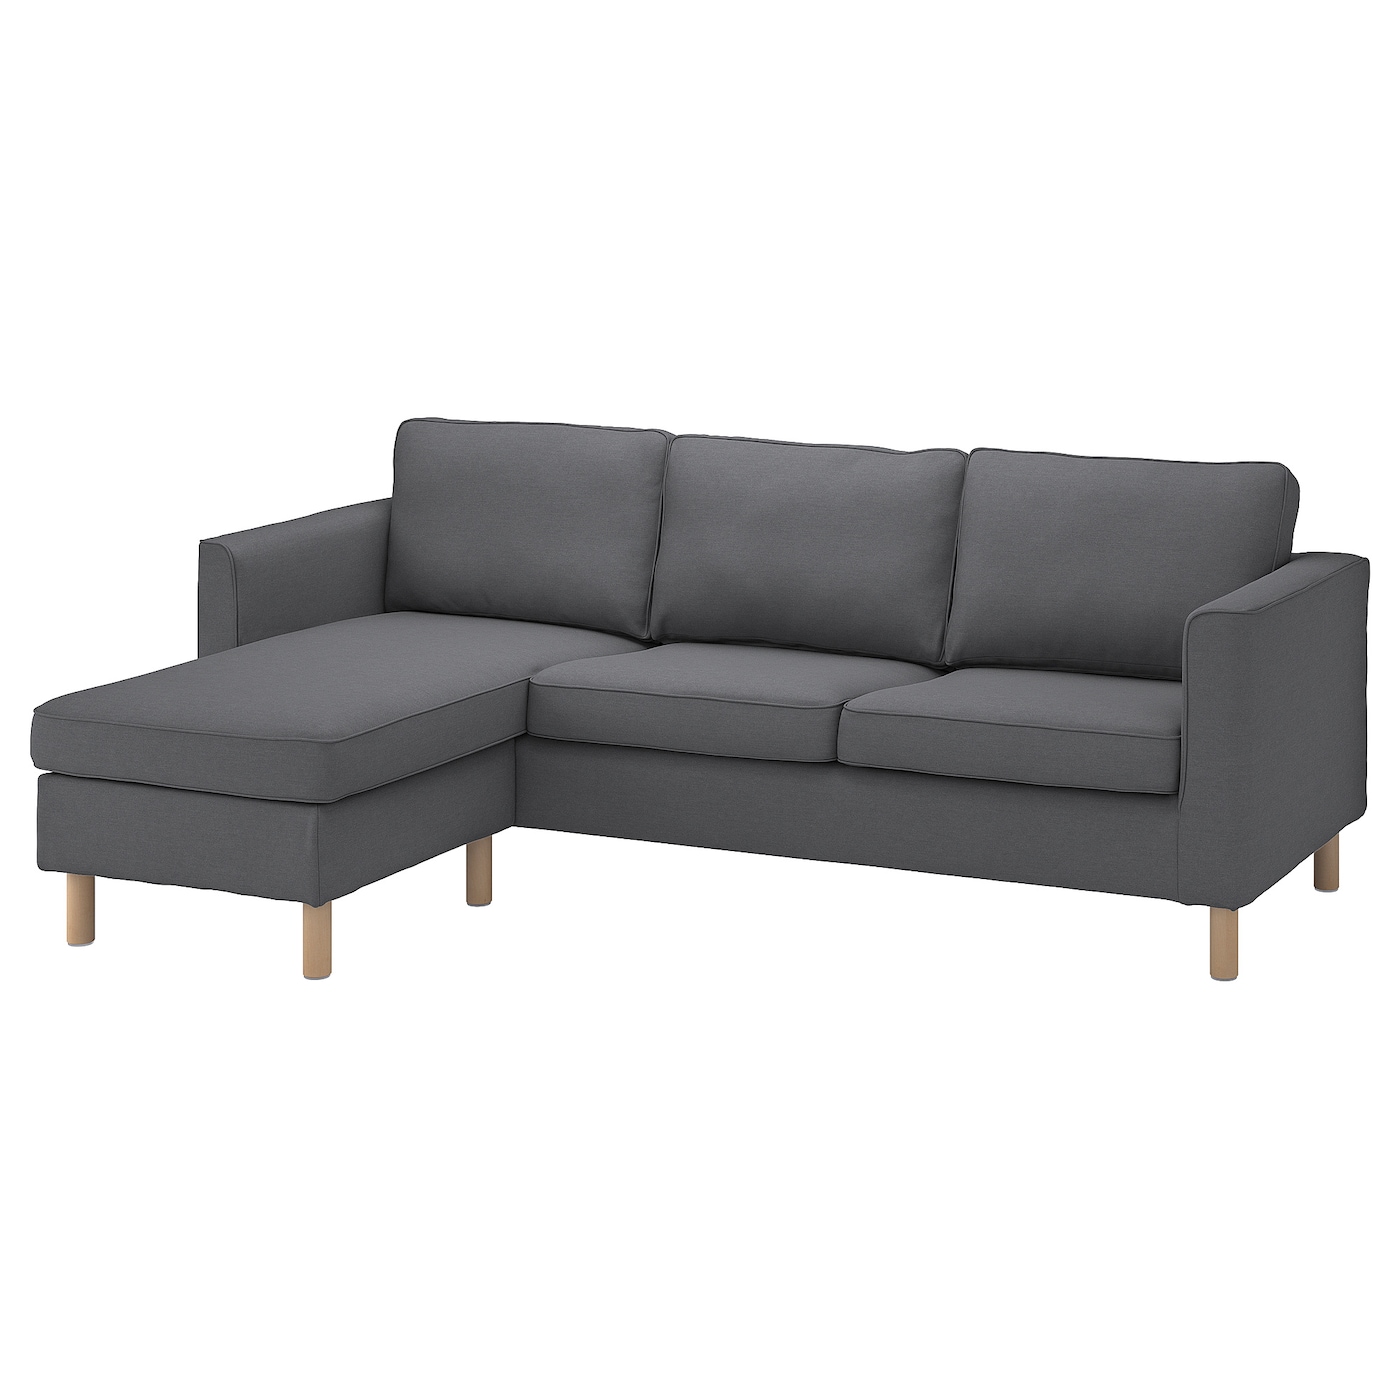 2-местный диван и кушетка - IKEA PÄRUP/PARUP, 86x148x235см, черный, ПЭРУП ИКЕА